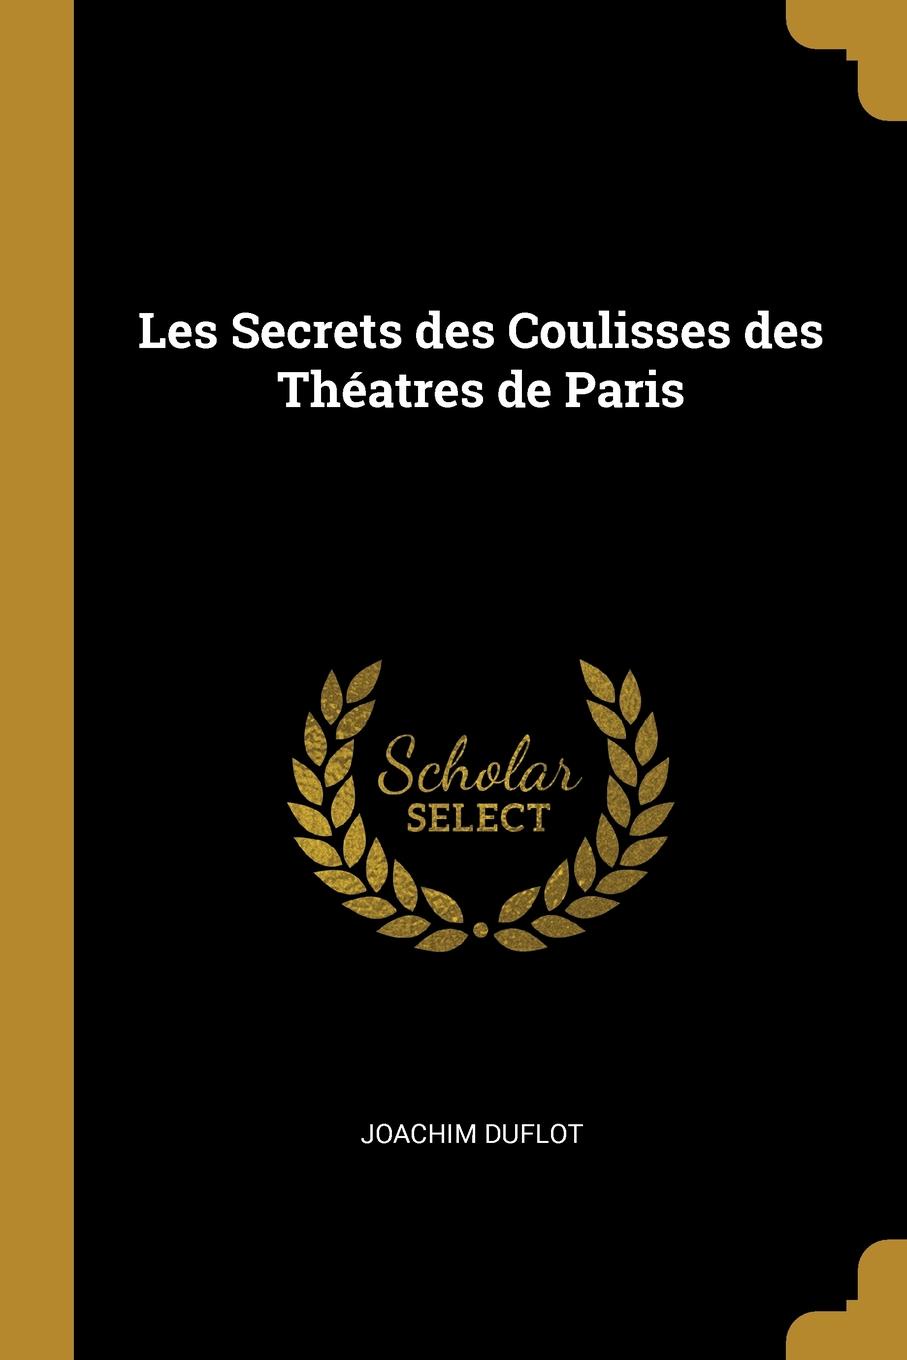 Les Secrets des Coulisses des Theatres de Paris